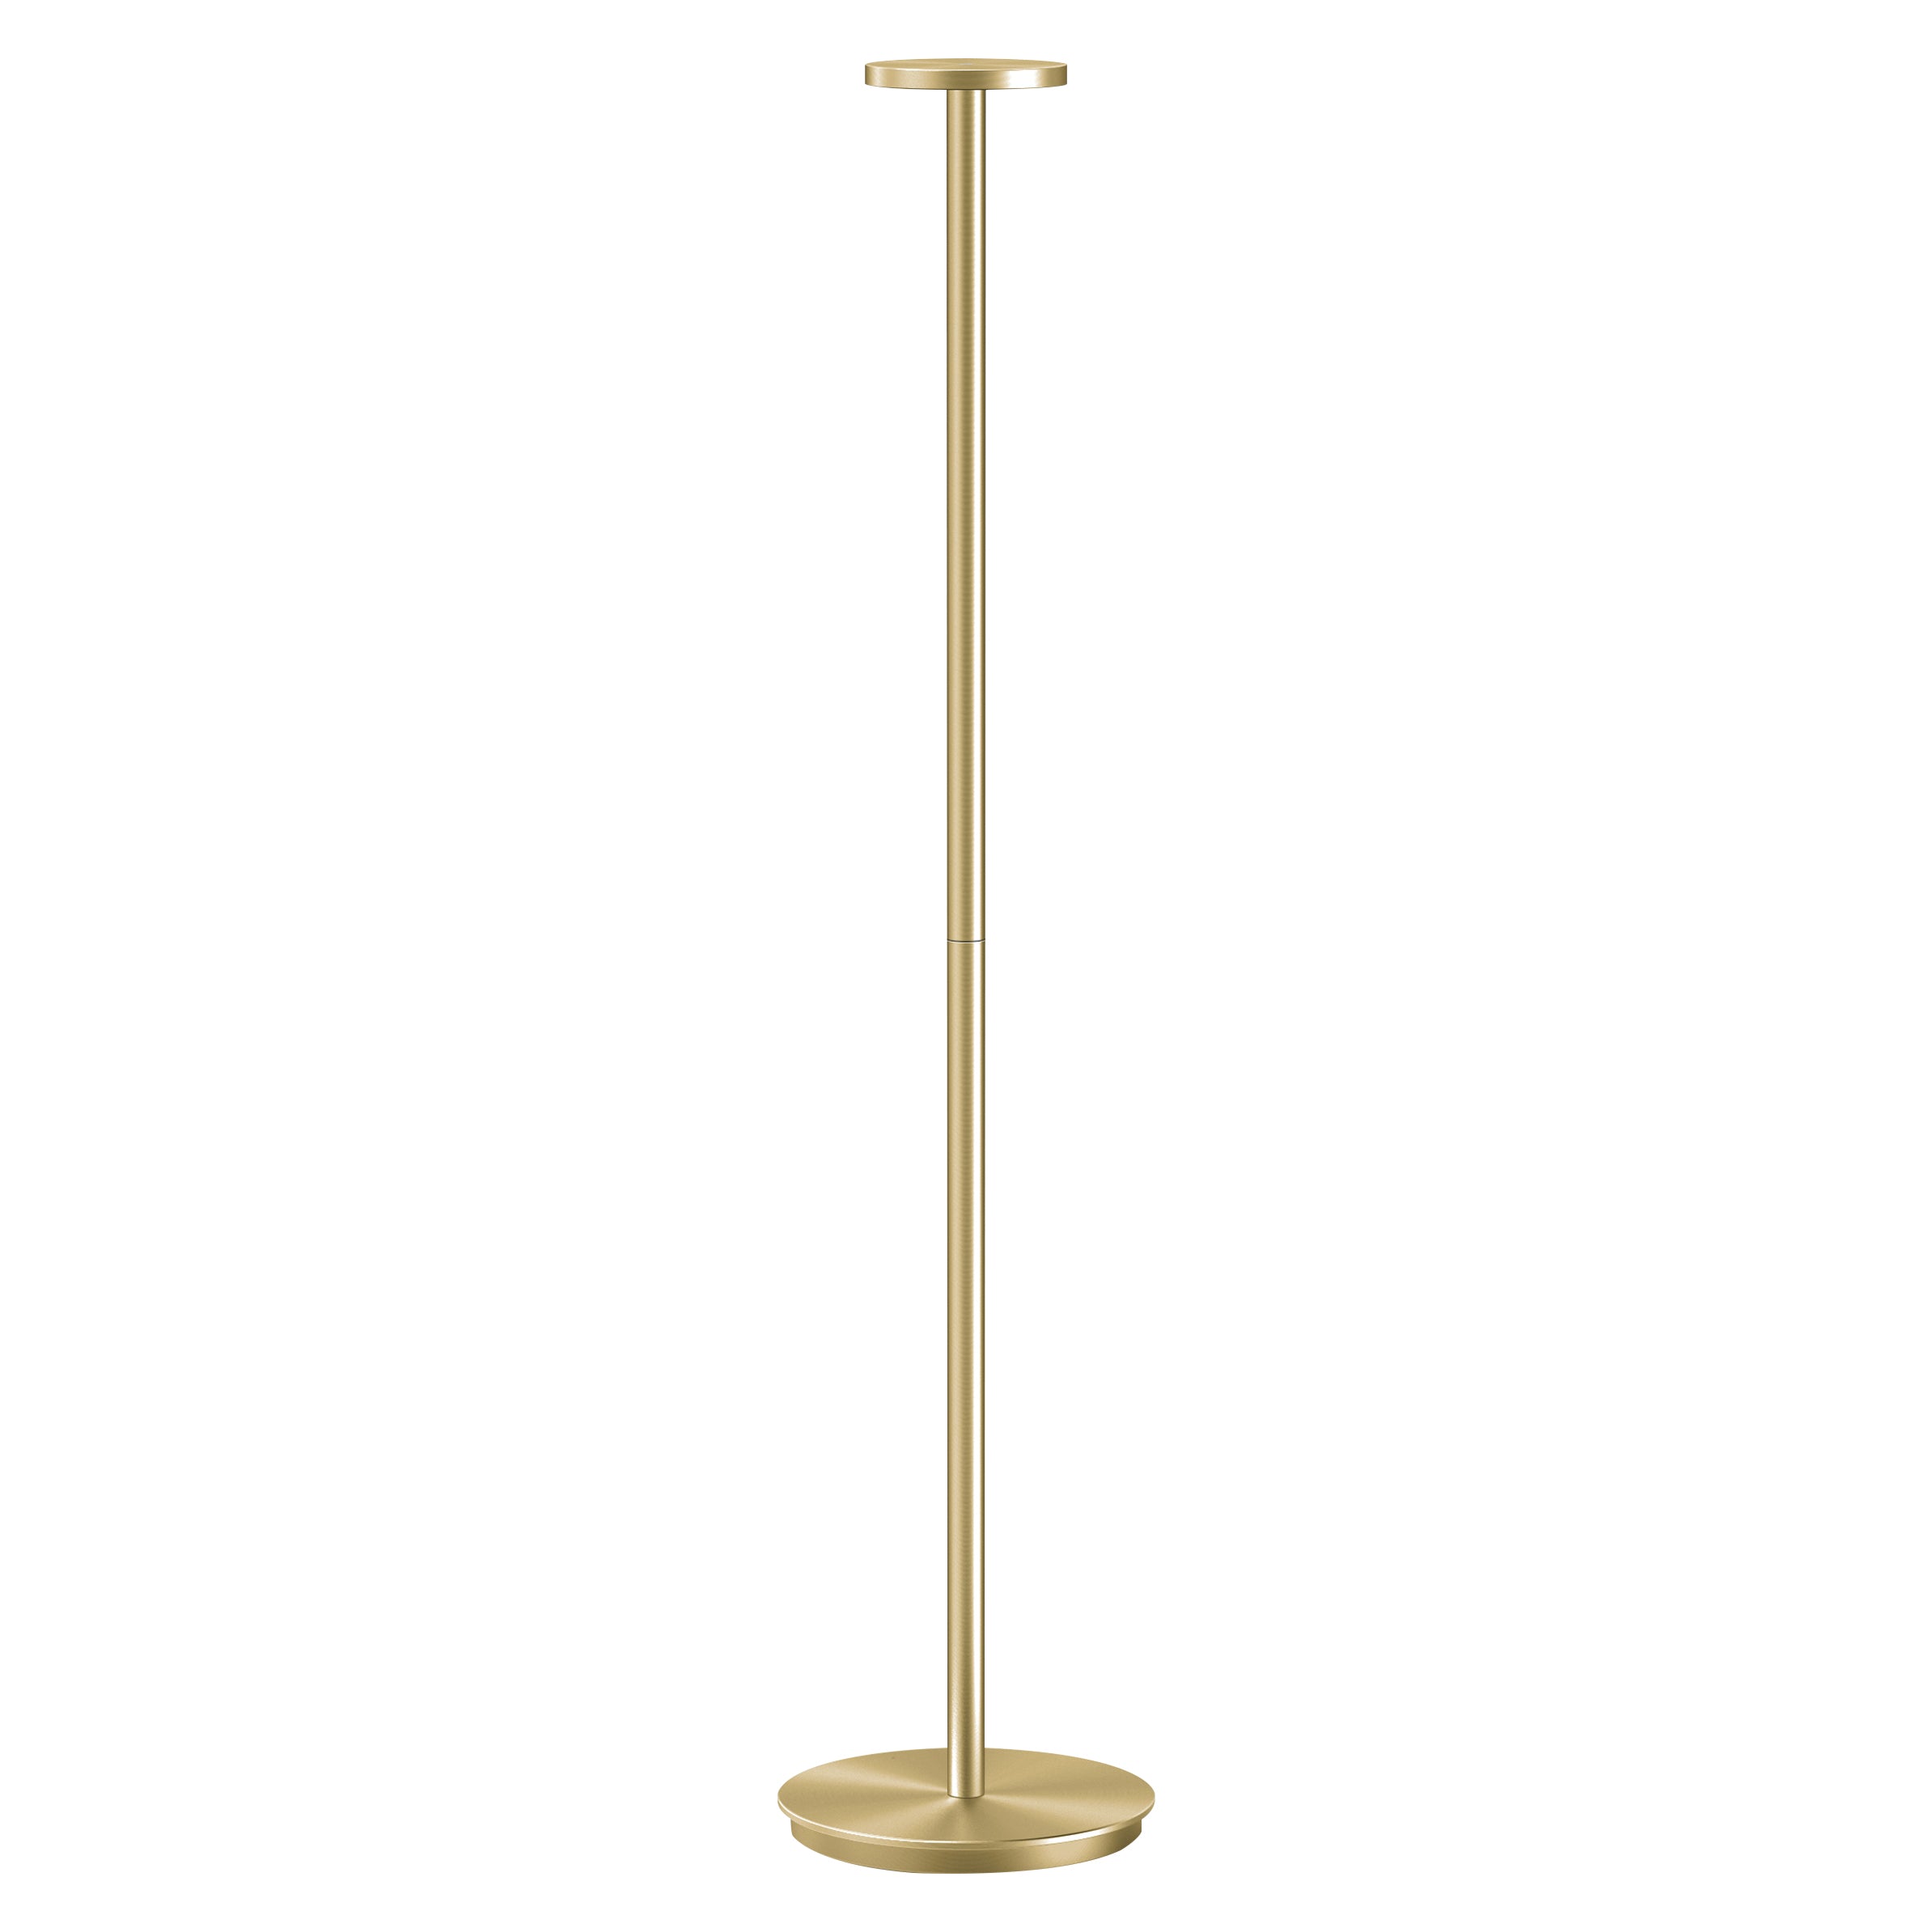 Luci Floor Lamp: Brass